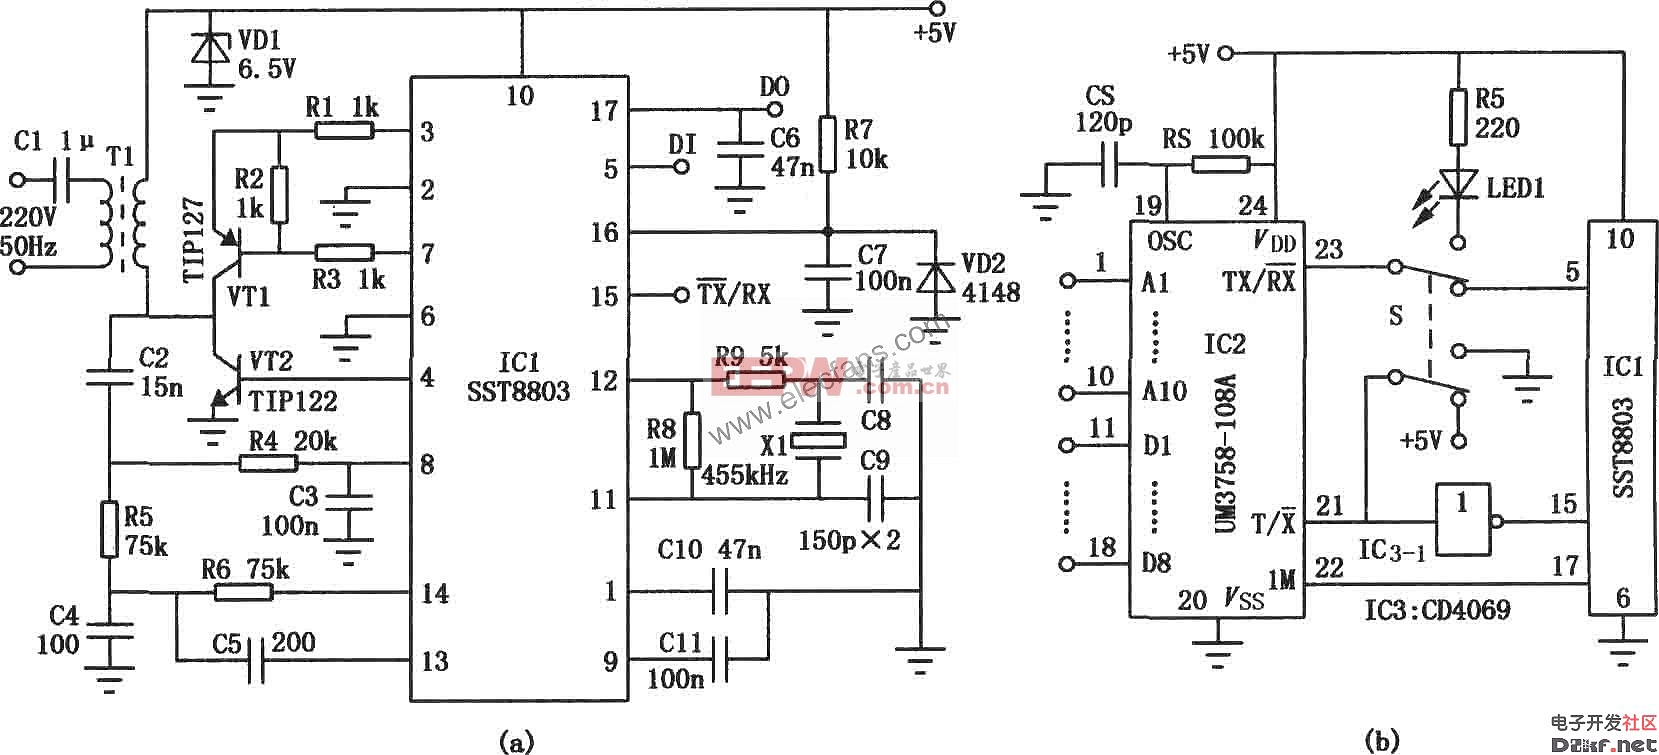 SST8803、UM3758-108A组成的数据传输调制/解调器  